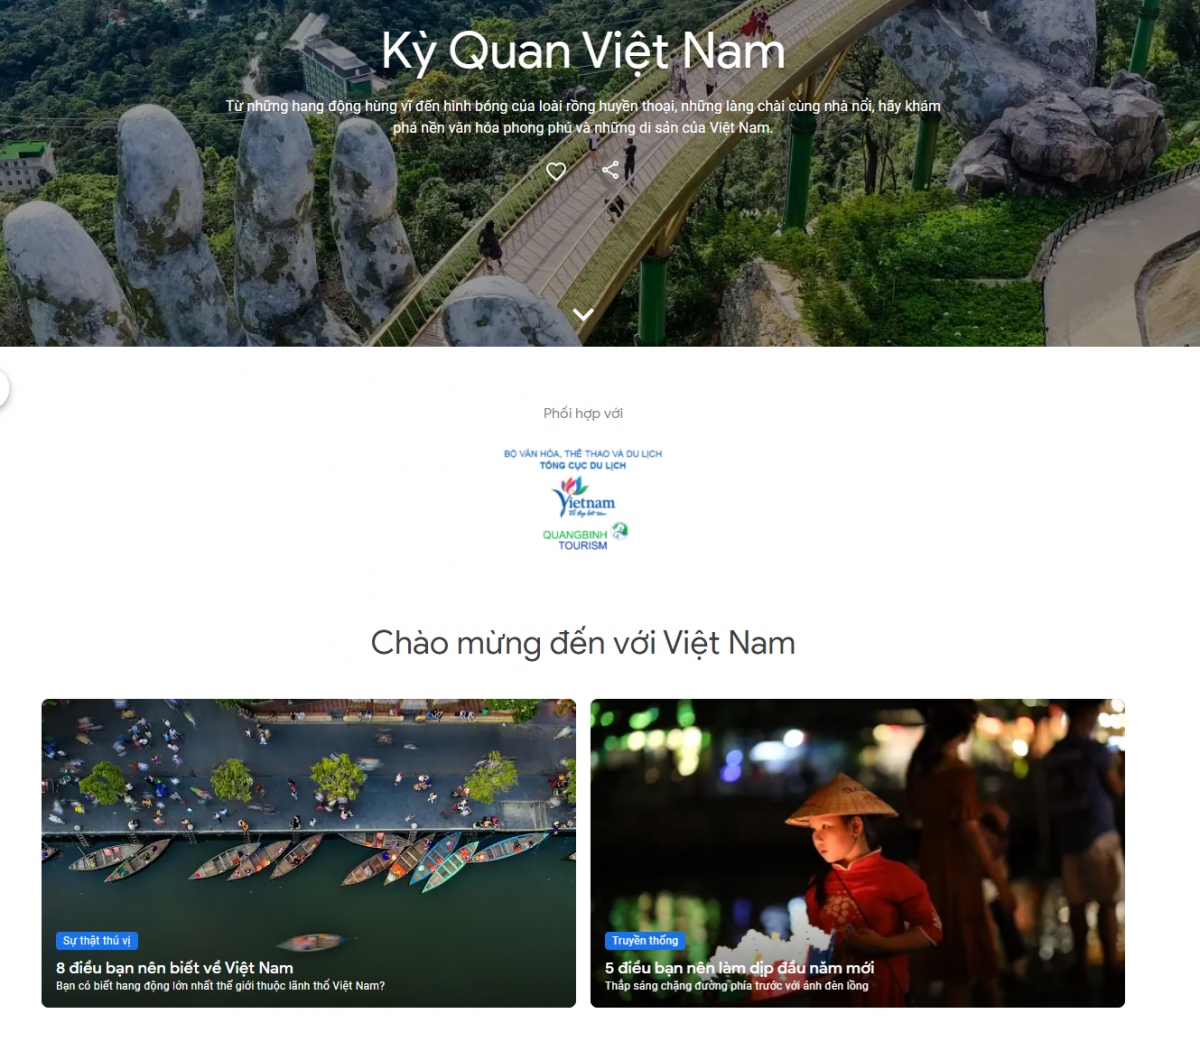 google arts culture unveils wonders of vietnam project picture 2